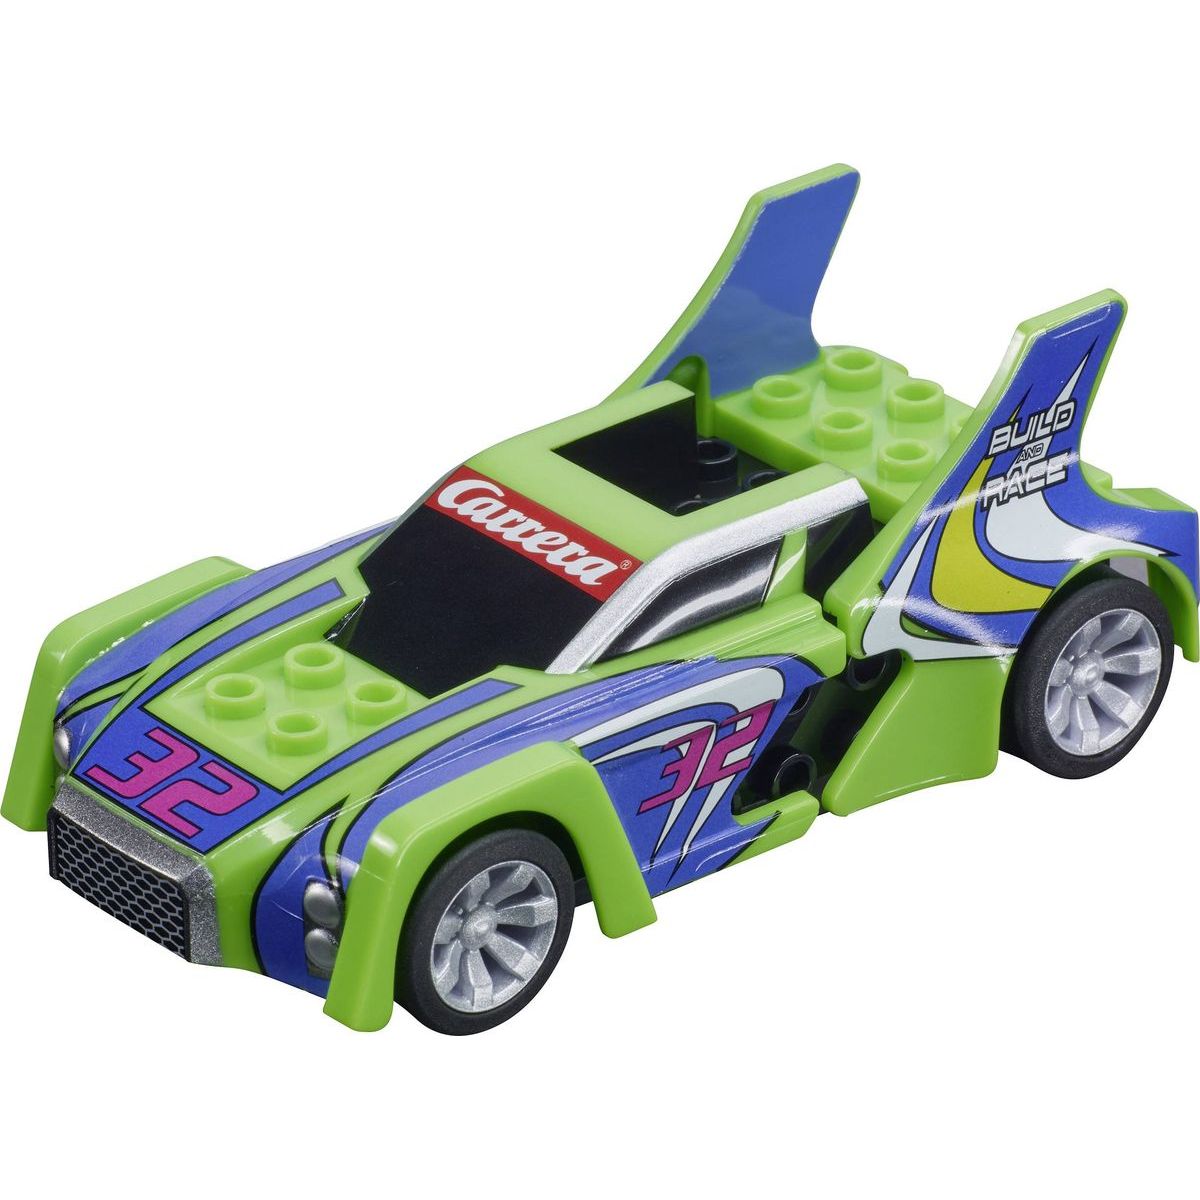 Auto GO a GO+ 64192 Build n Race Racer green